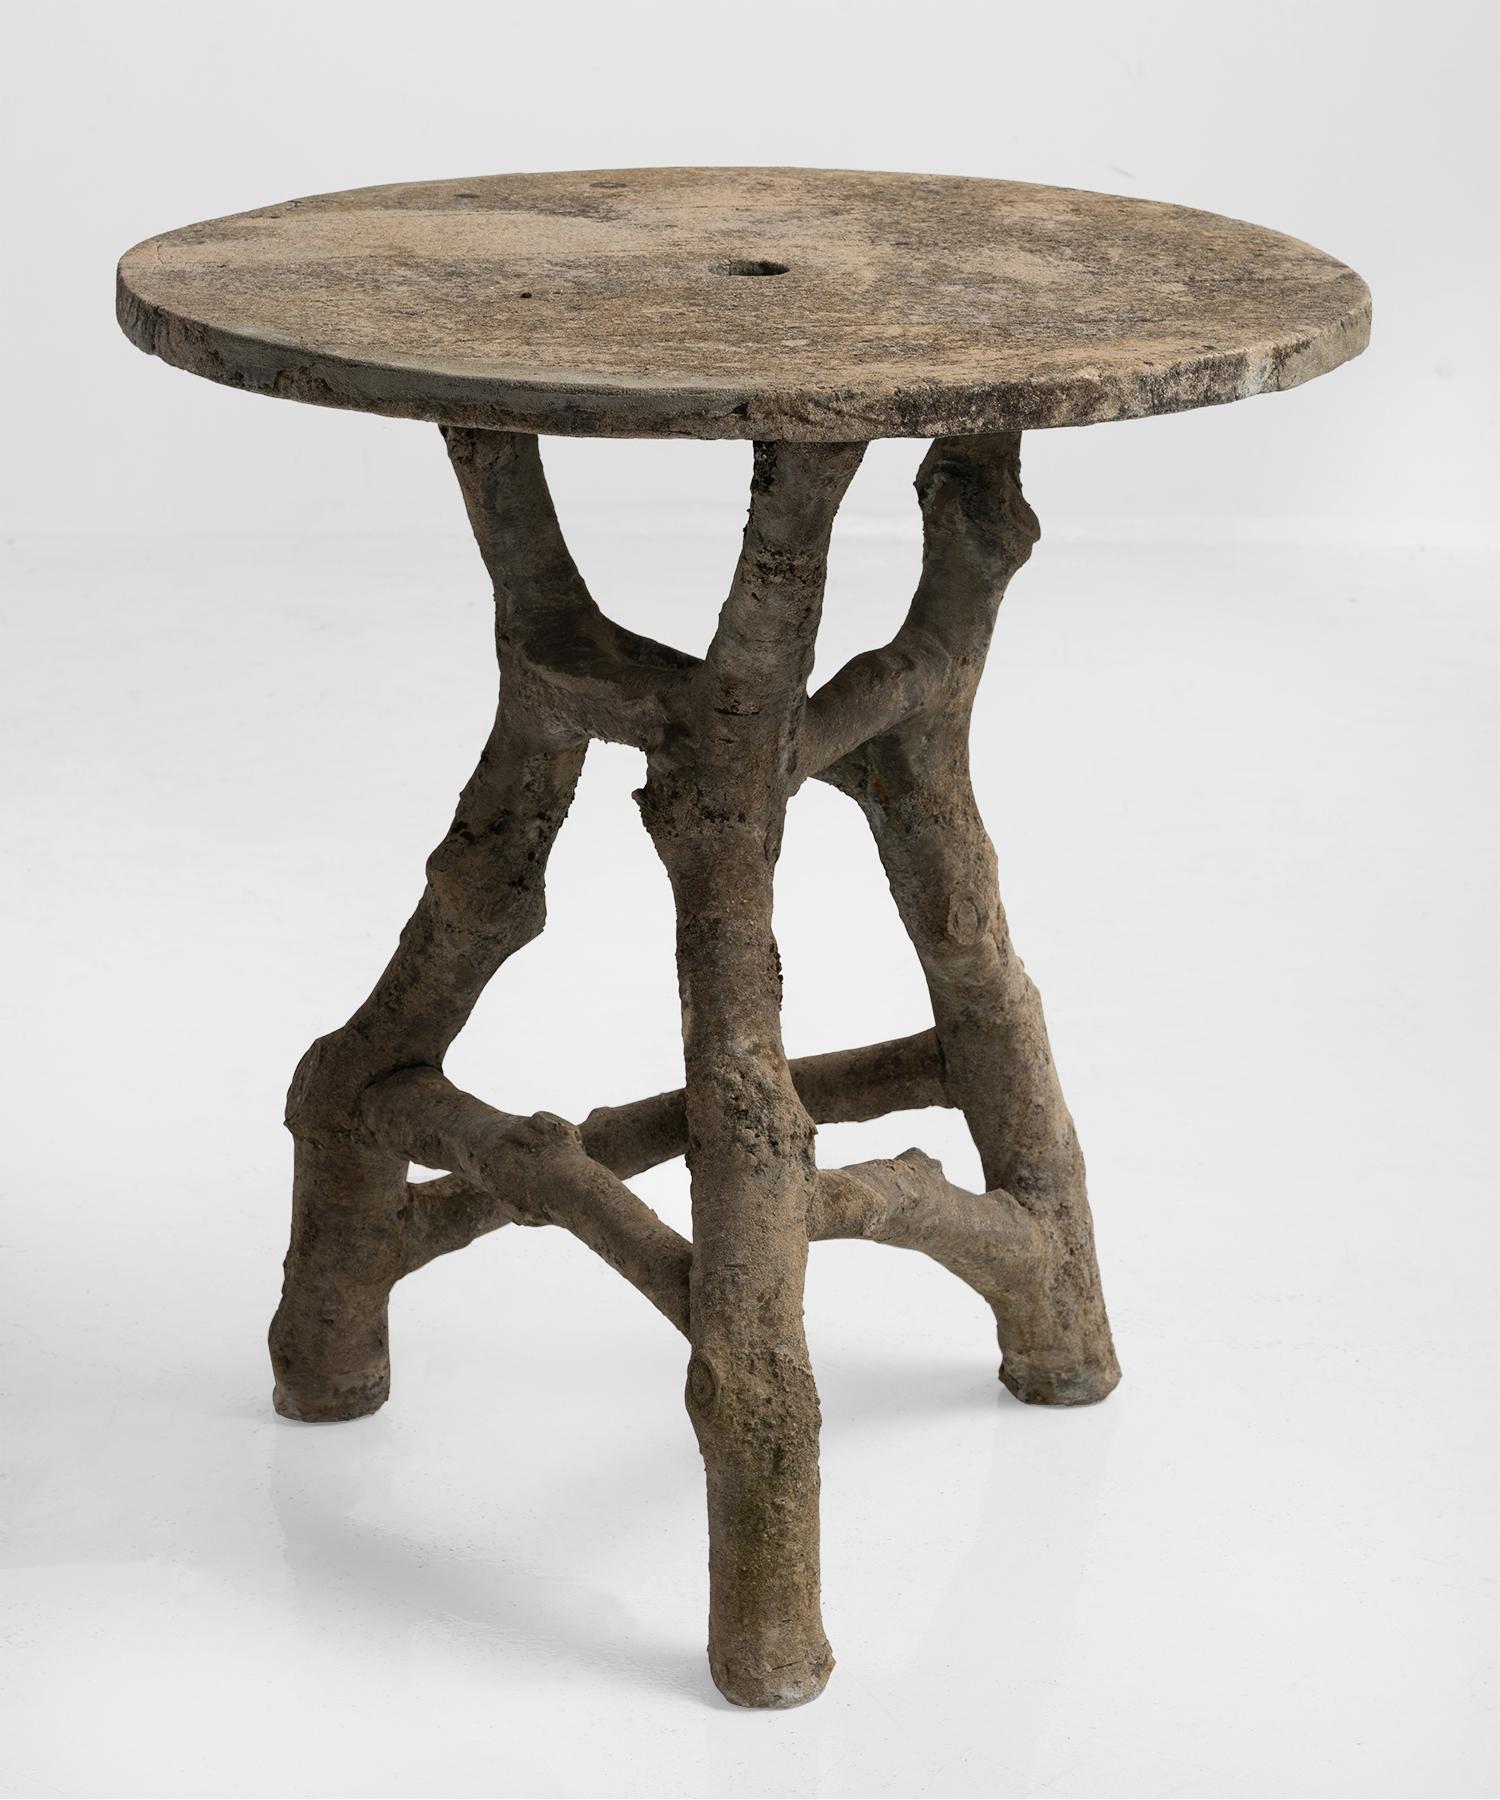 Faux bois table, France, circa 1950.

Hand-sculpted concrete table with unique form.